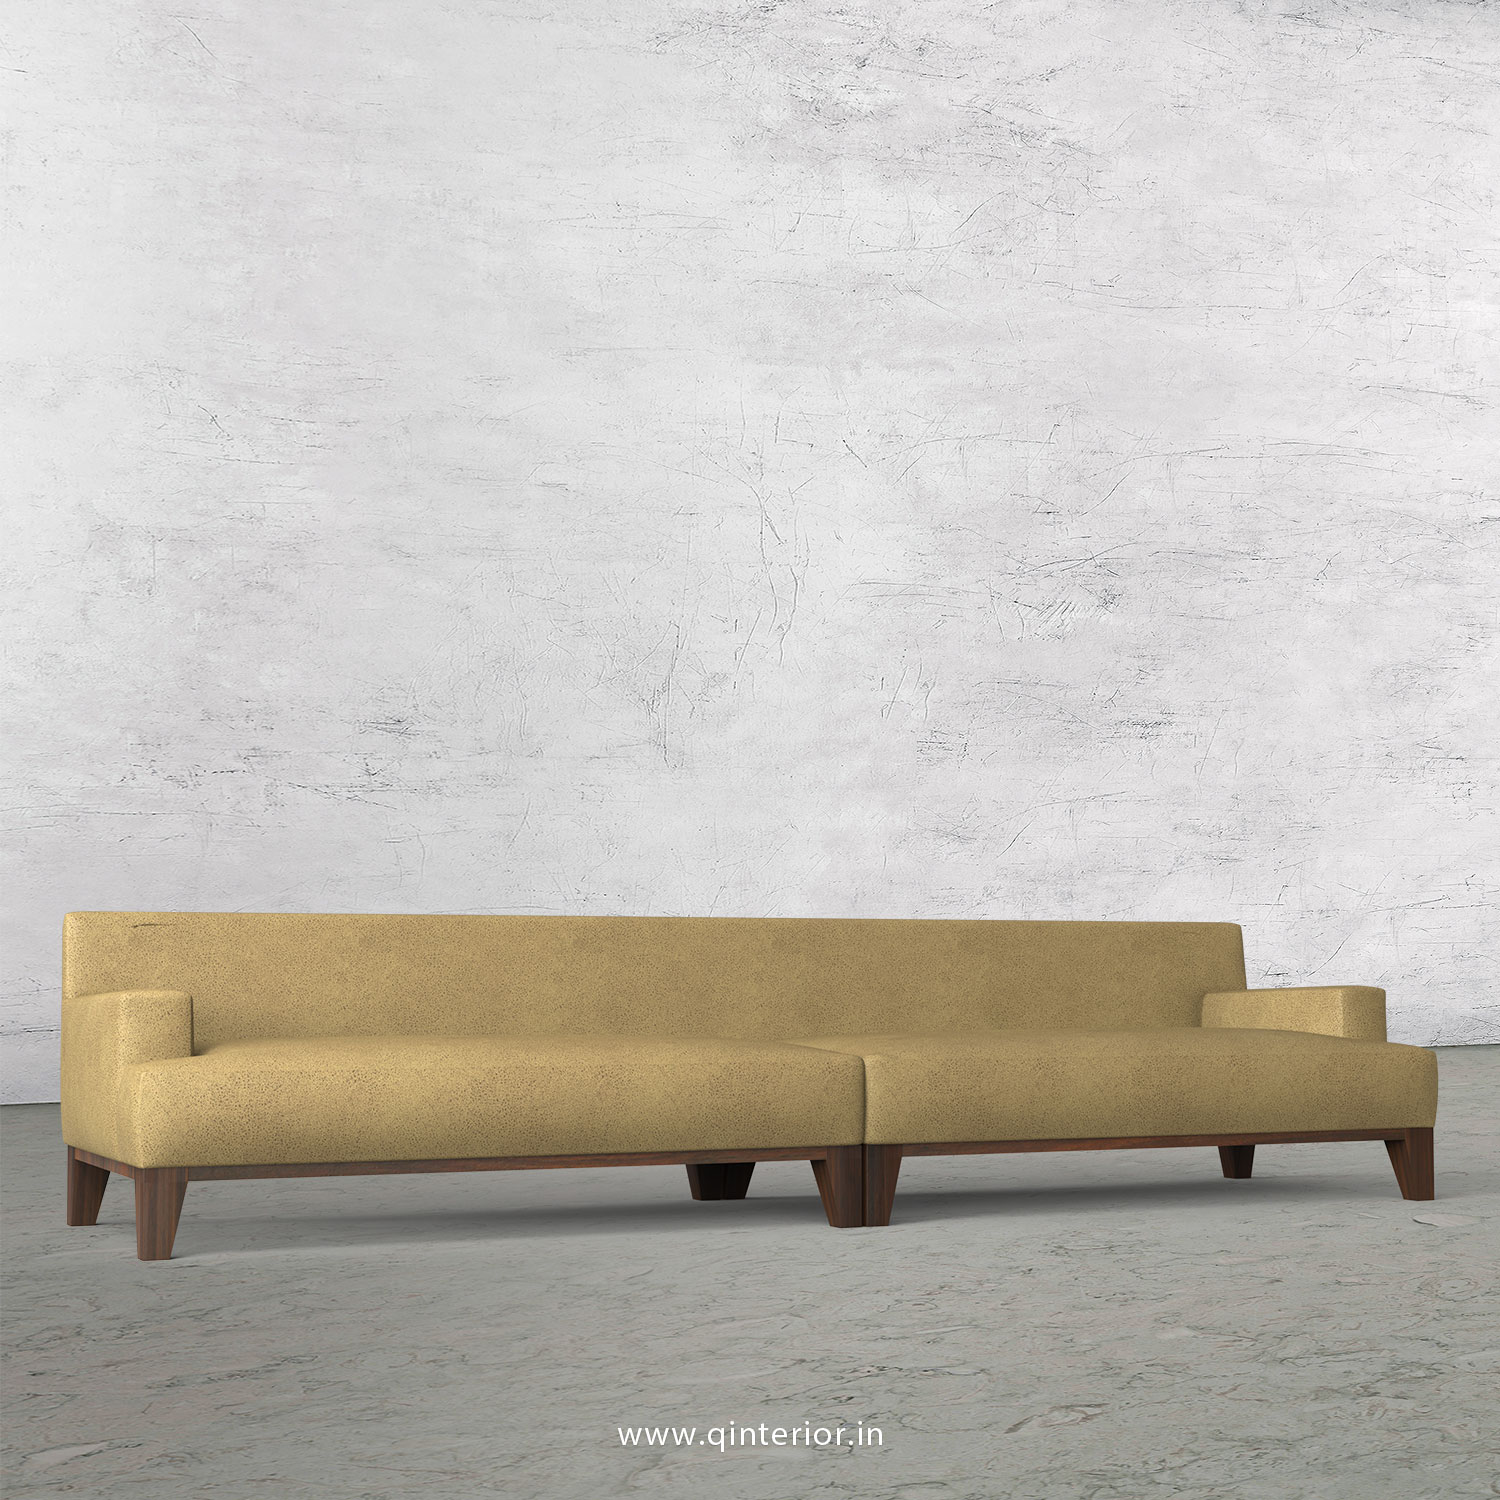 QUADRO 4 Seater Sofa in Fab Leather Fabric - SFA010 FL01